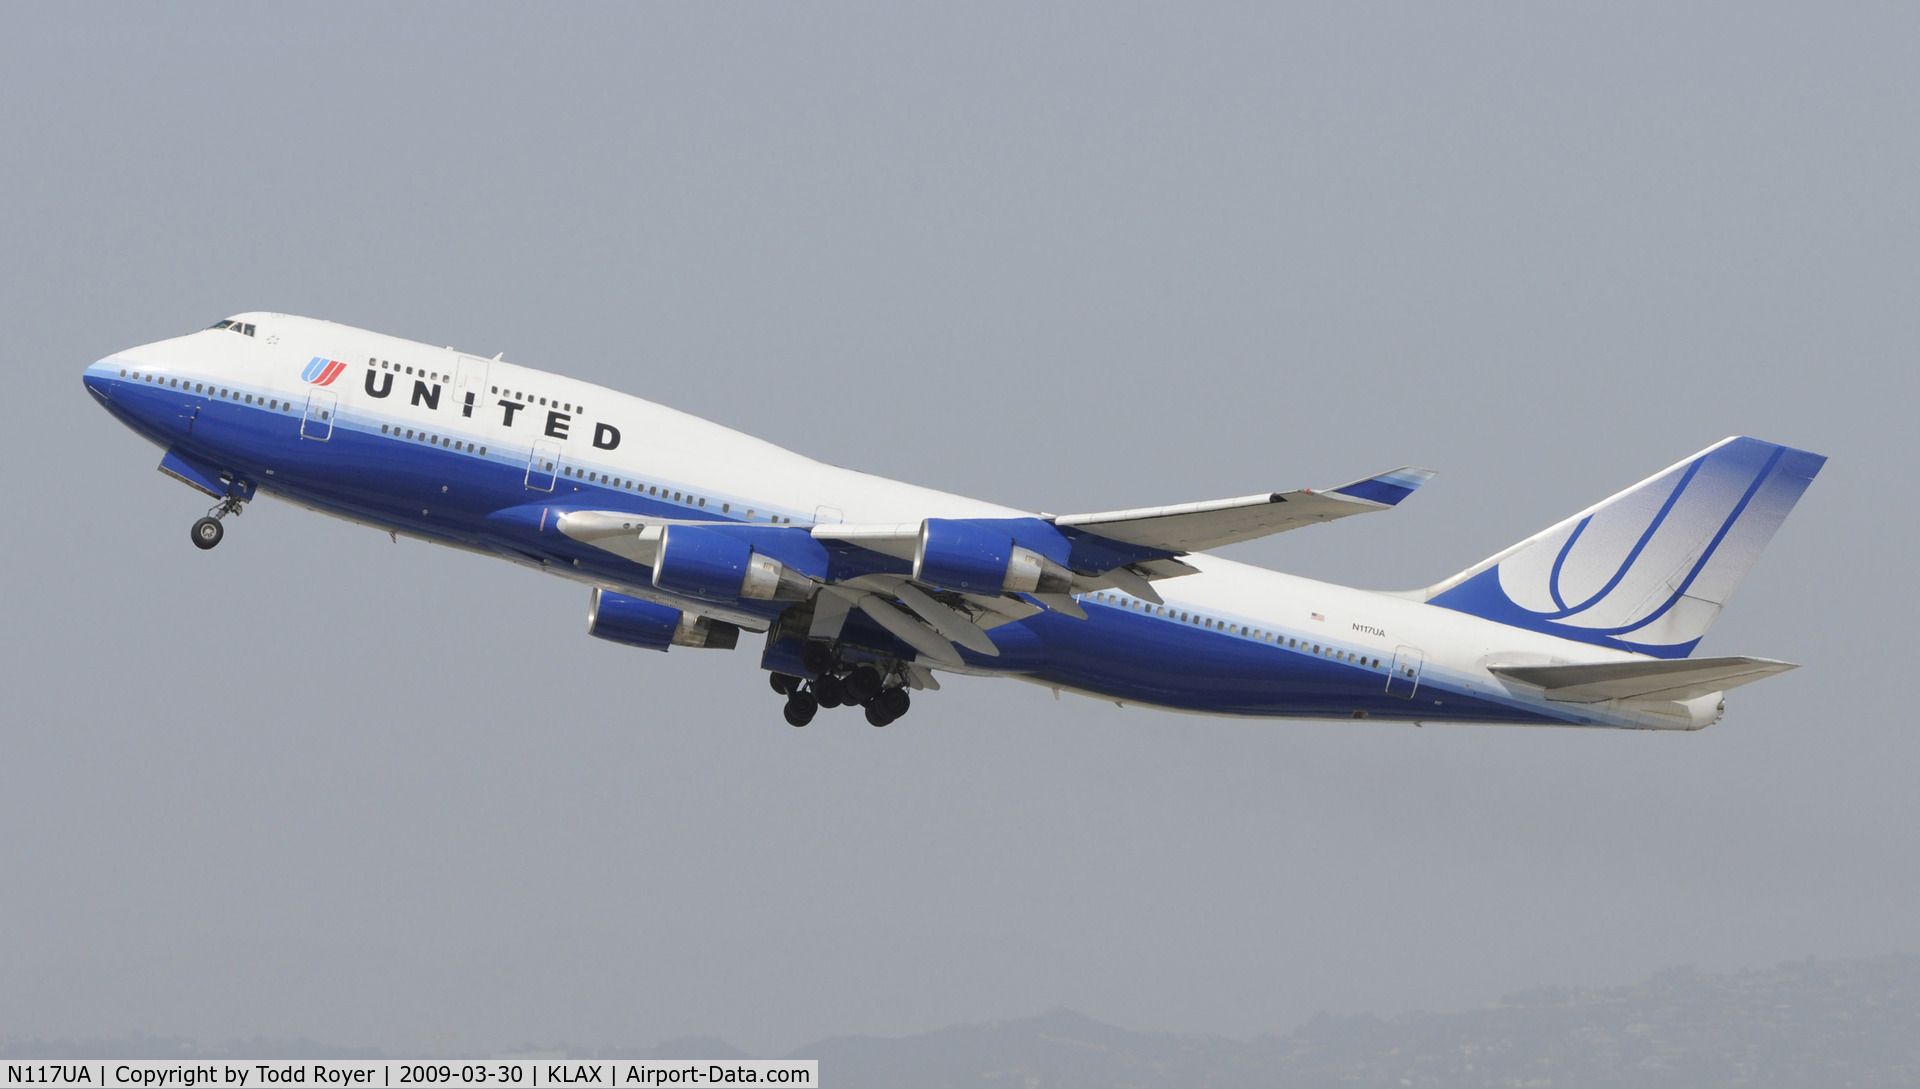 N117UA, 1999 Boeing 747-422 C/N 28810, Departing LAX on 25R